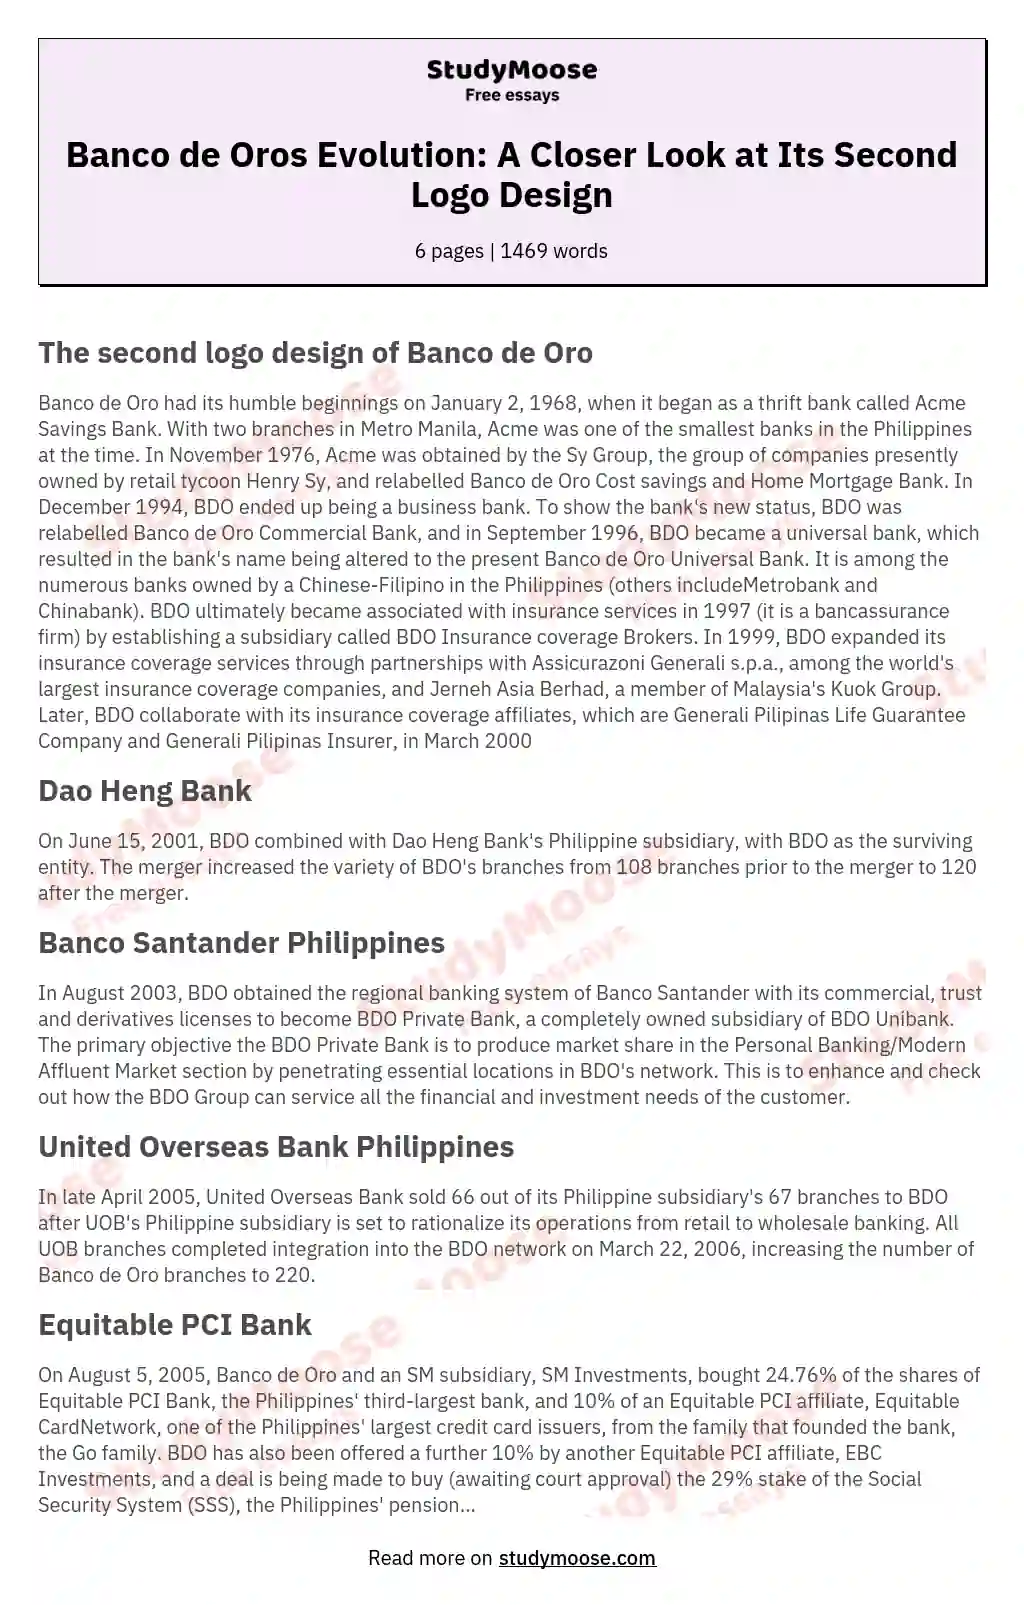 Banco de Oros Evolution: A Closer Look at Its Second Logo Design essay